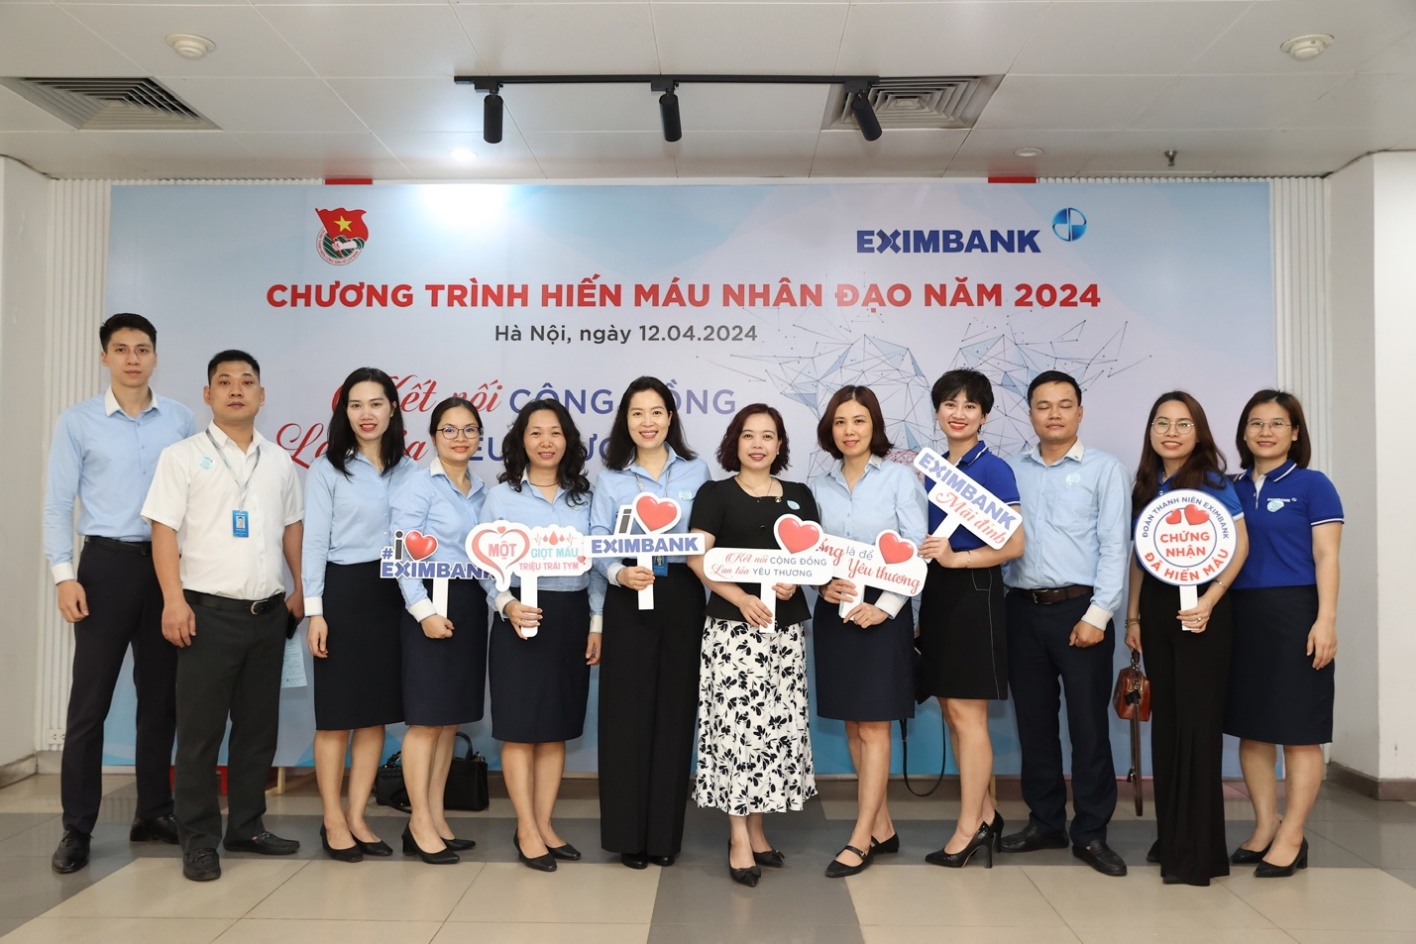 Eximbank tổ chức ngày hội hiến máu vì cộng đồng năm 2024- Ảnh 1.